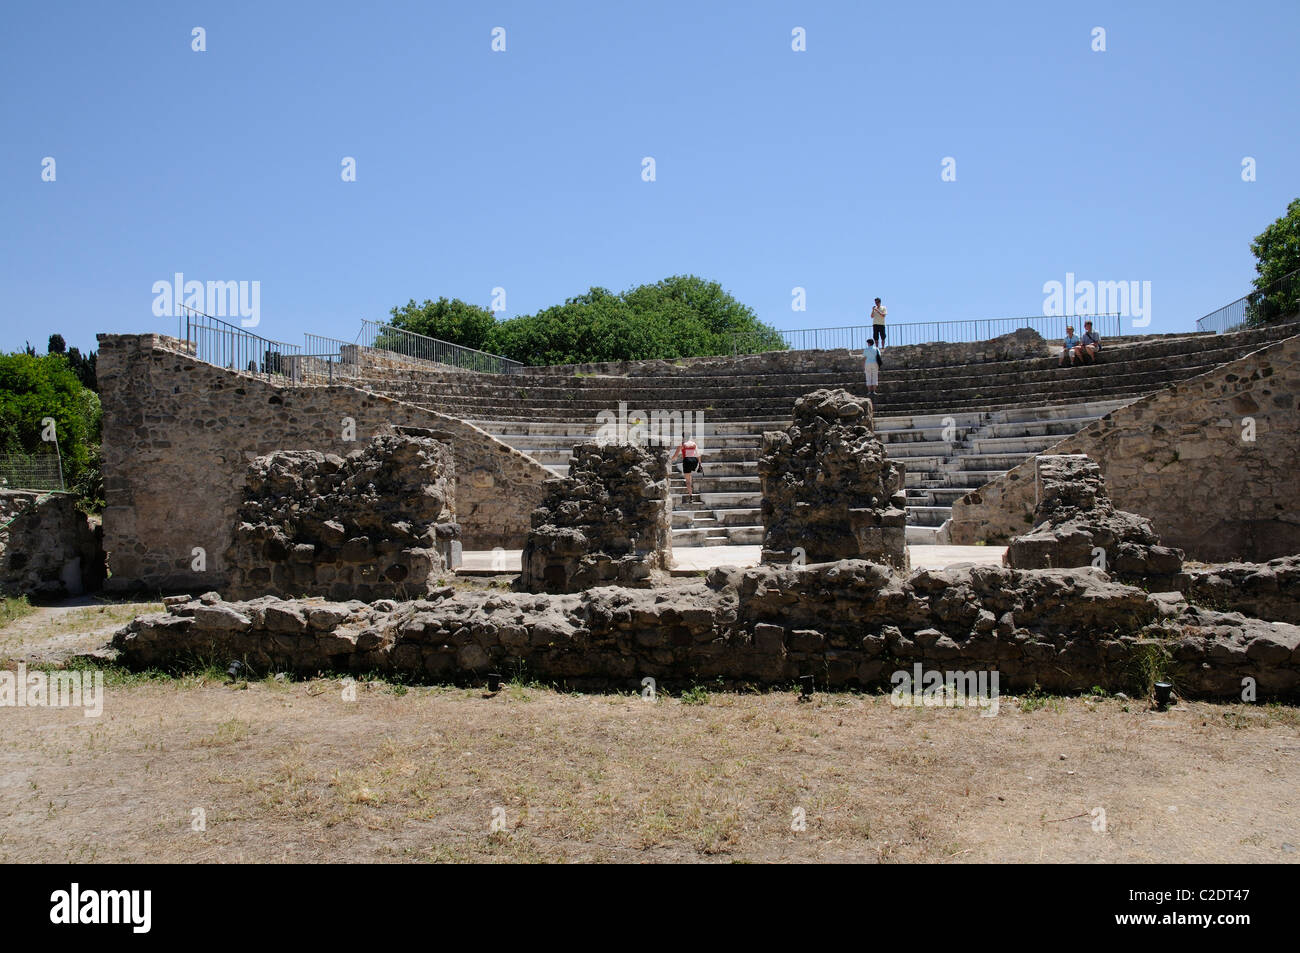 Visiteurs en observant le site Odeum romain dans la ville de Kos île de Kos, Grèce Banque D'Images